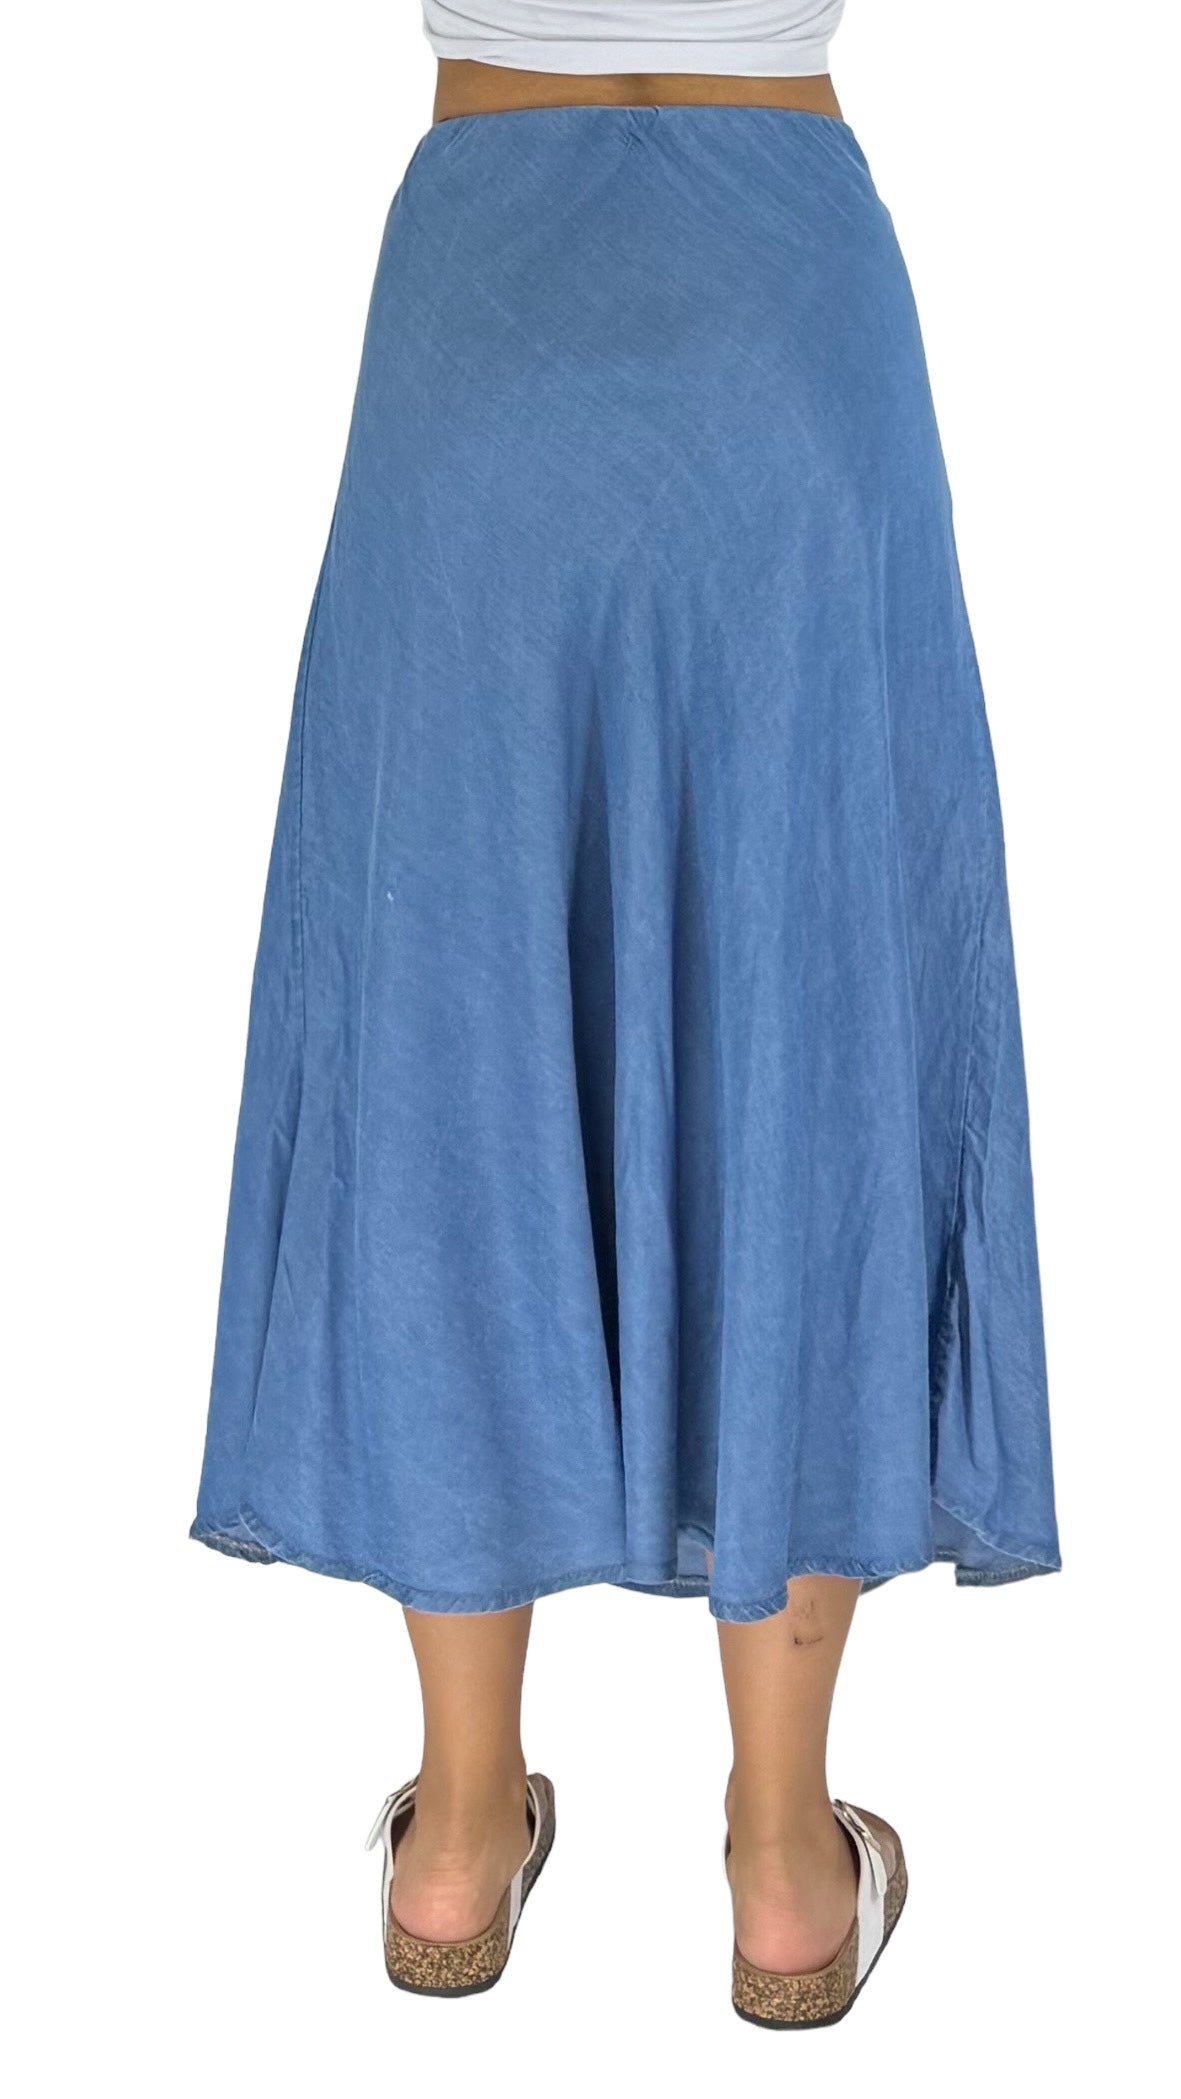 Aline blue skirt